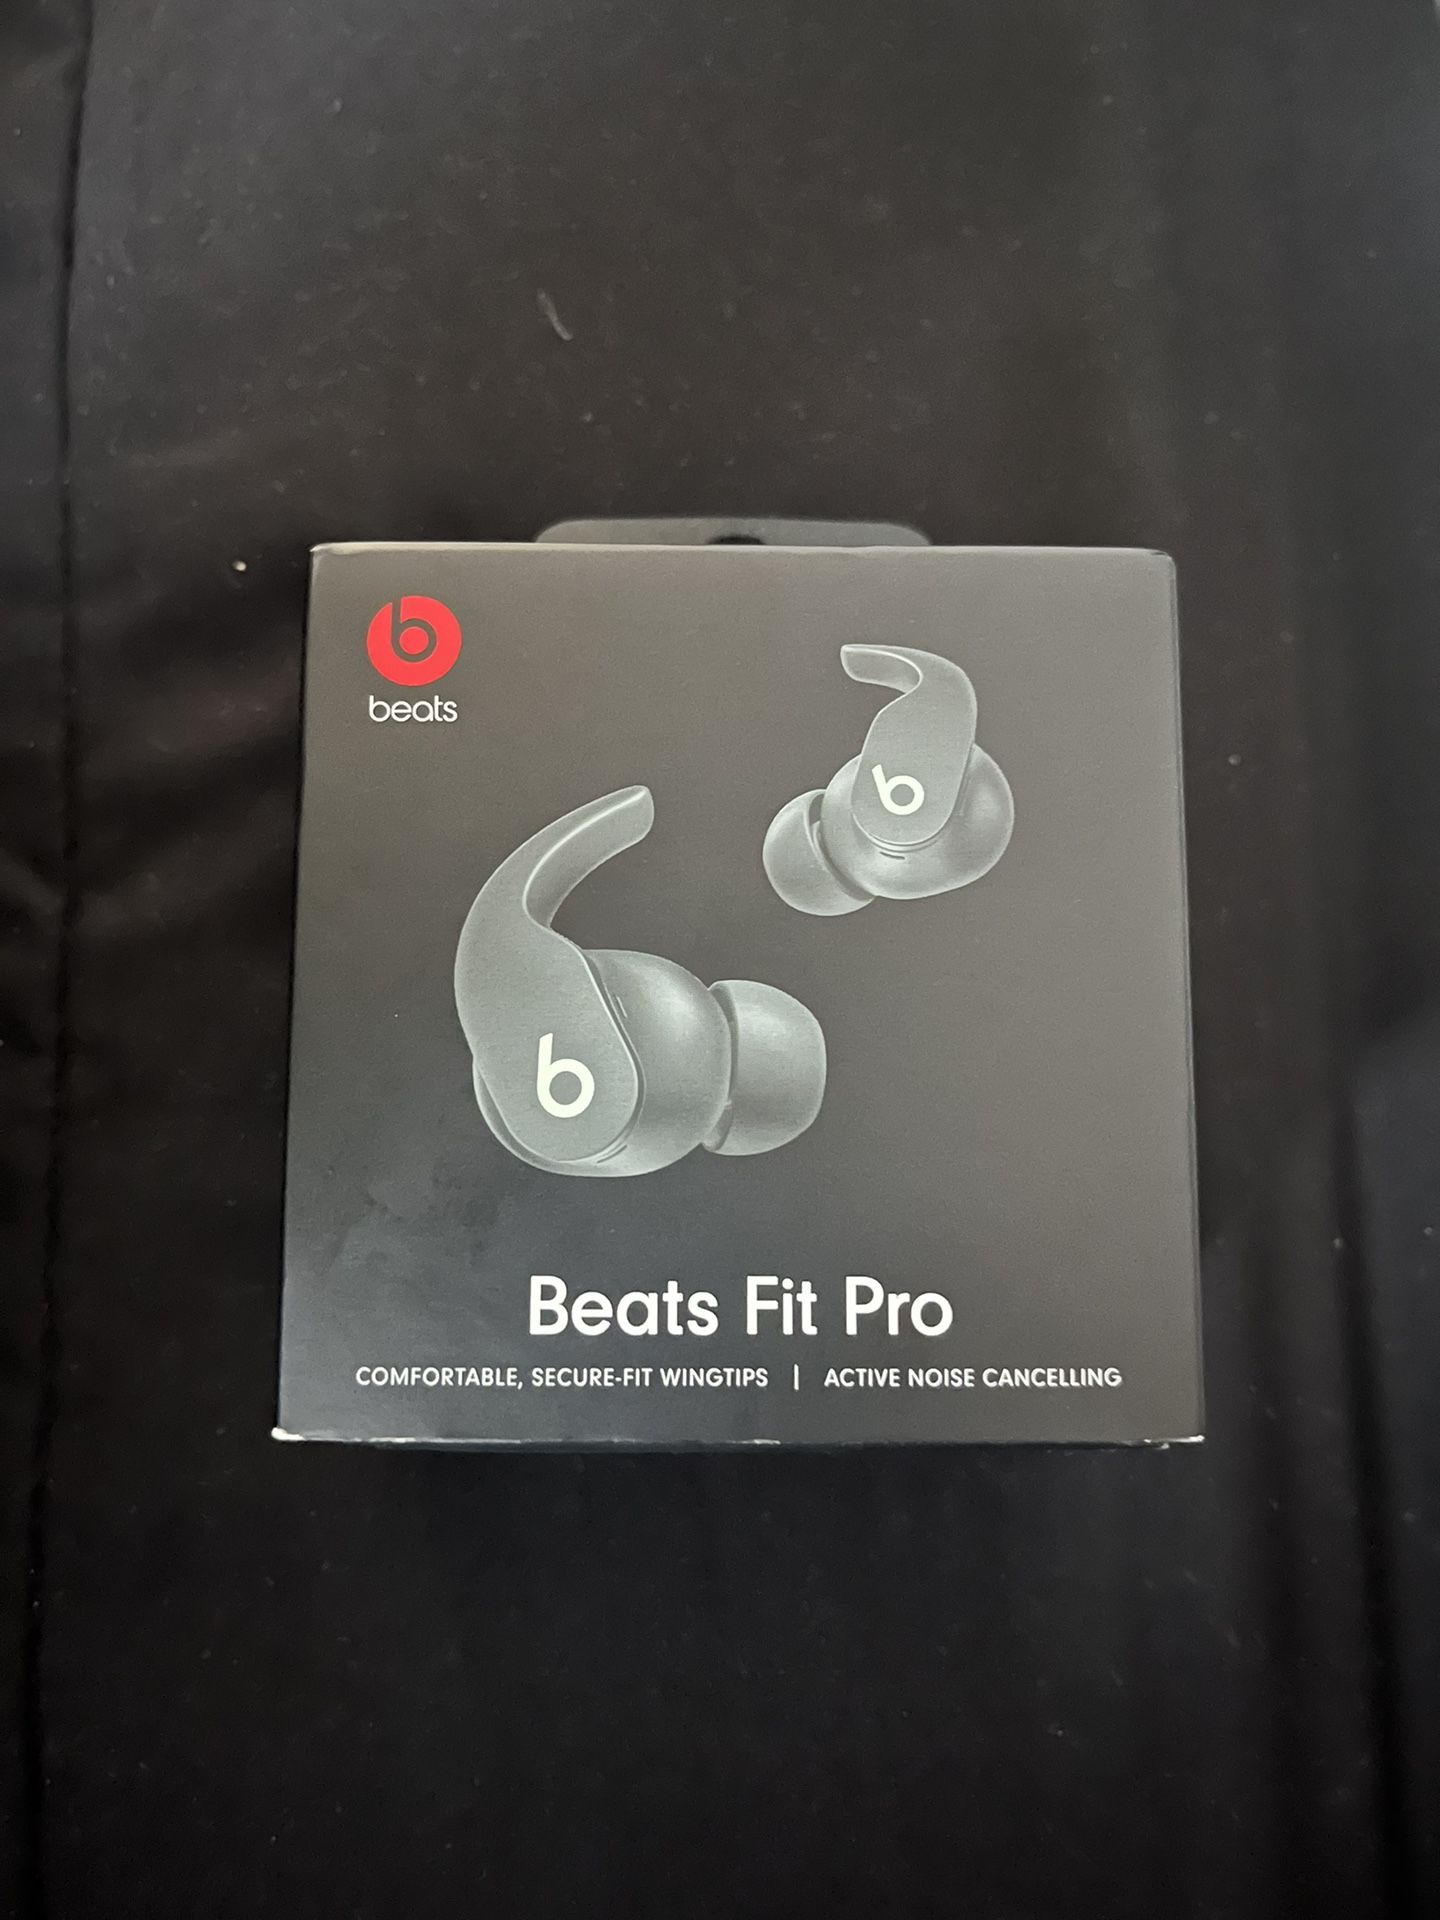 Beat Fit Pro's 